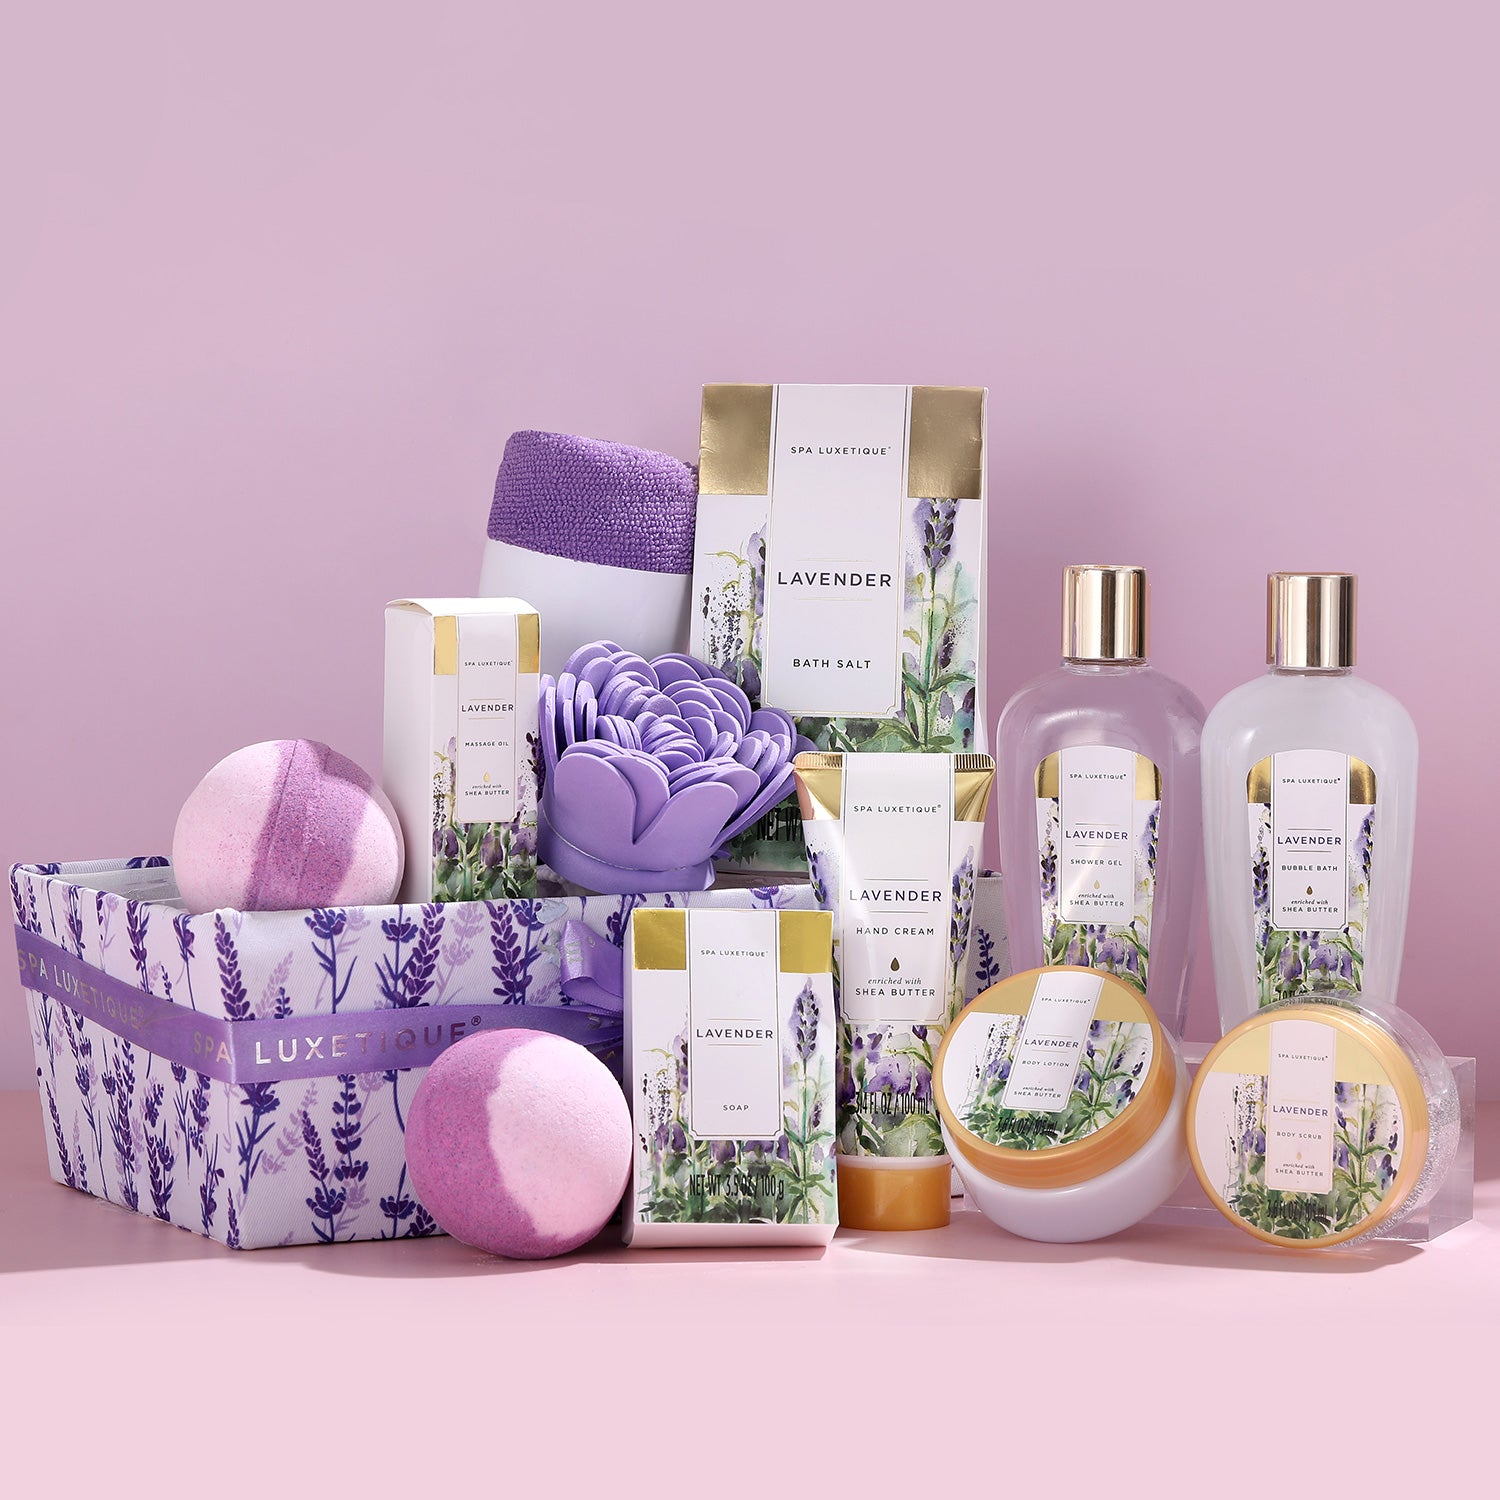 Spa Luxetique Gift Sets Lavender Bath & Shower Gift Basket